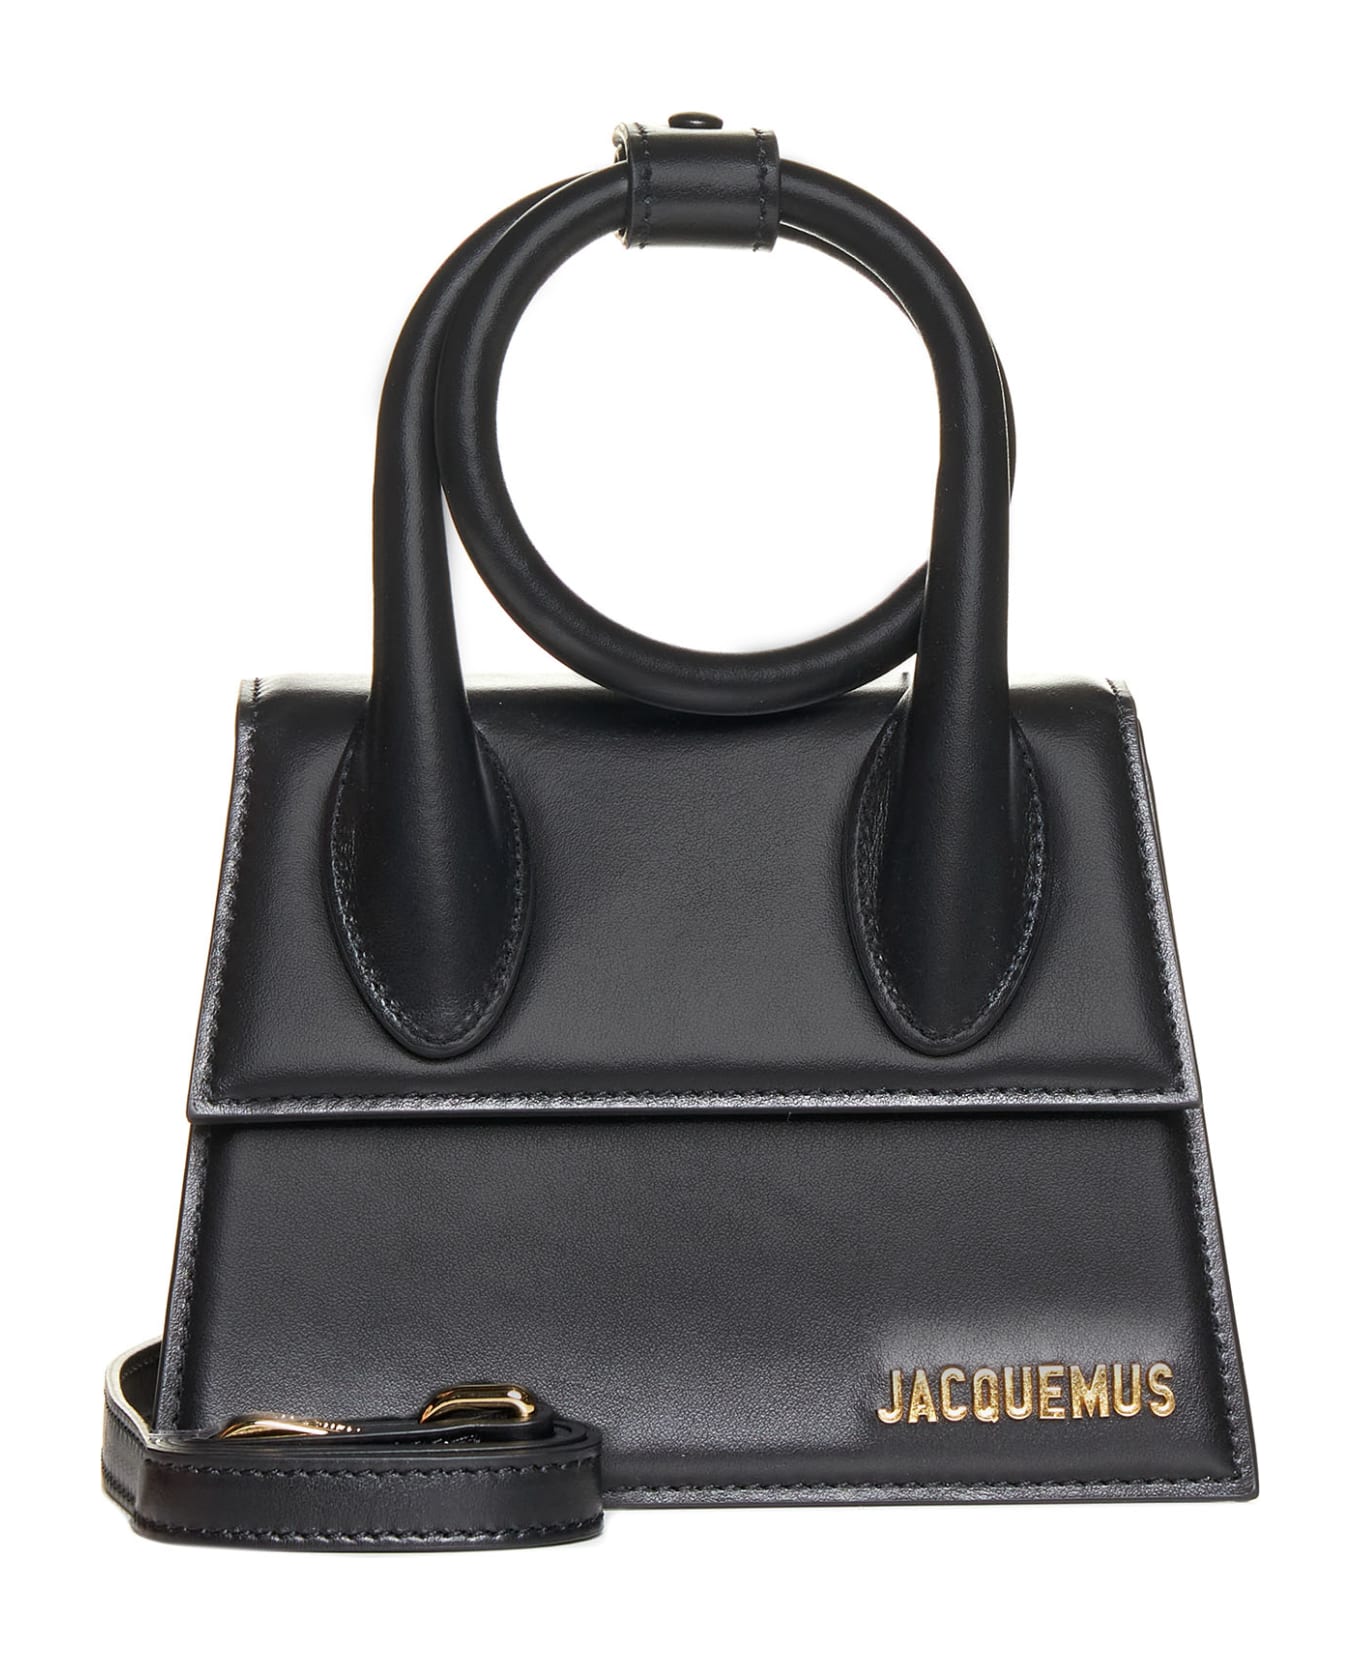 Jacquemus Le Chiquito Noeud Leather Shoulder Bag - Black